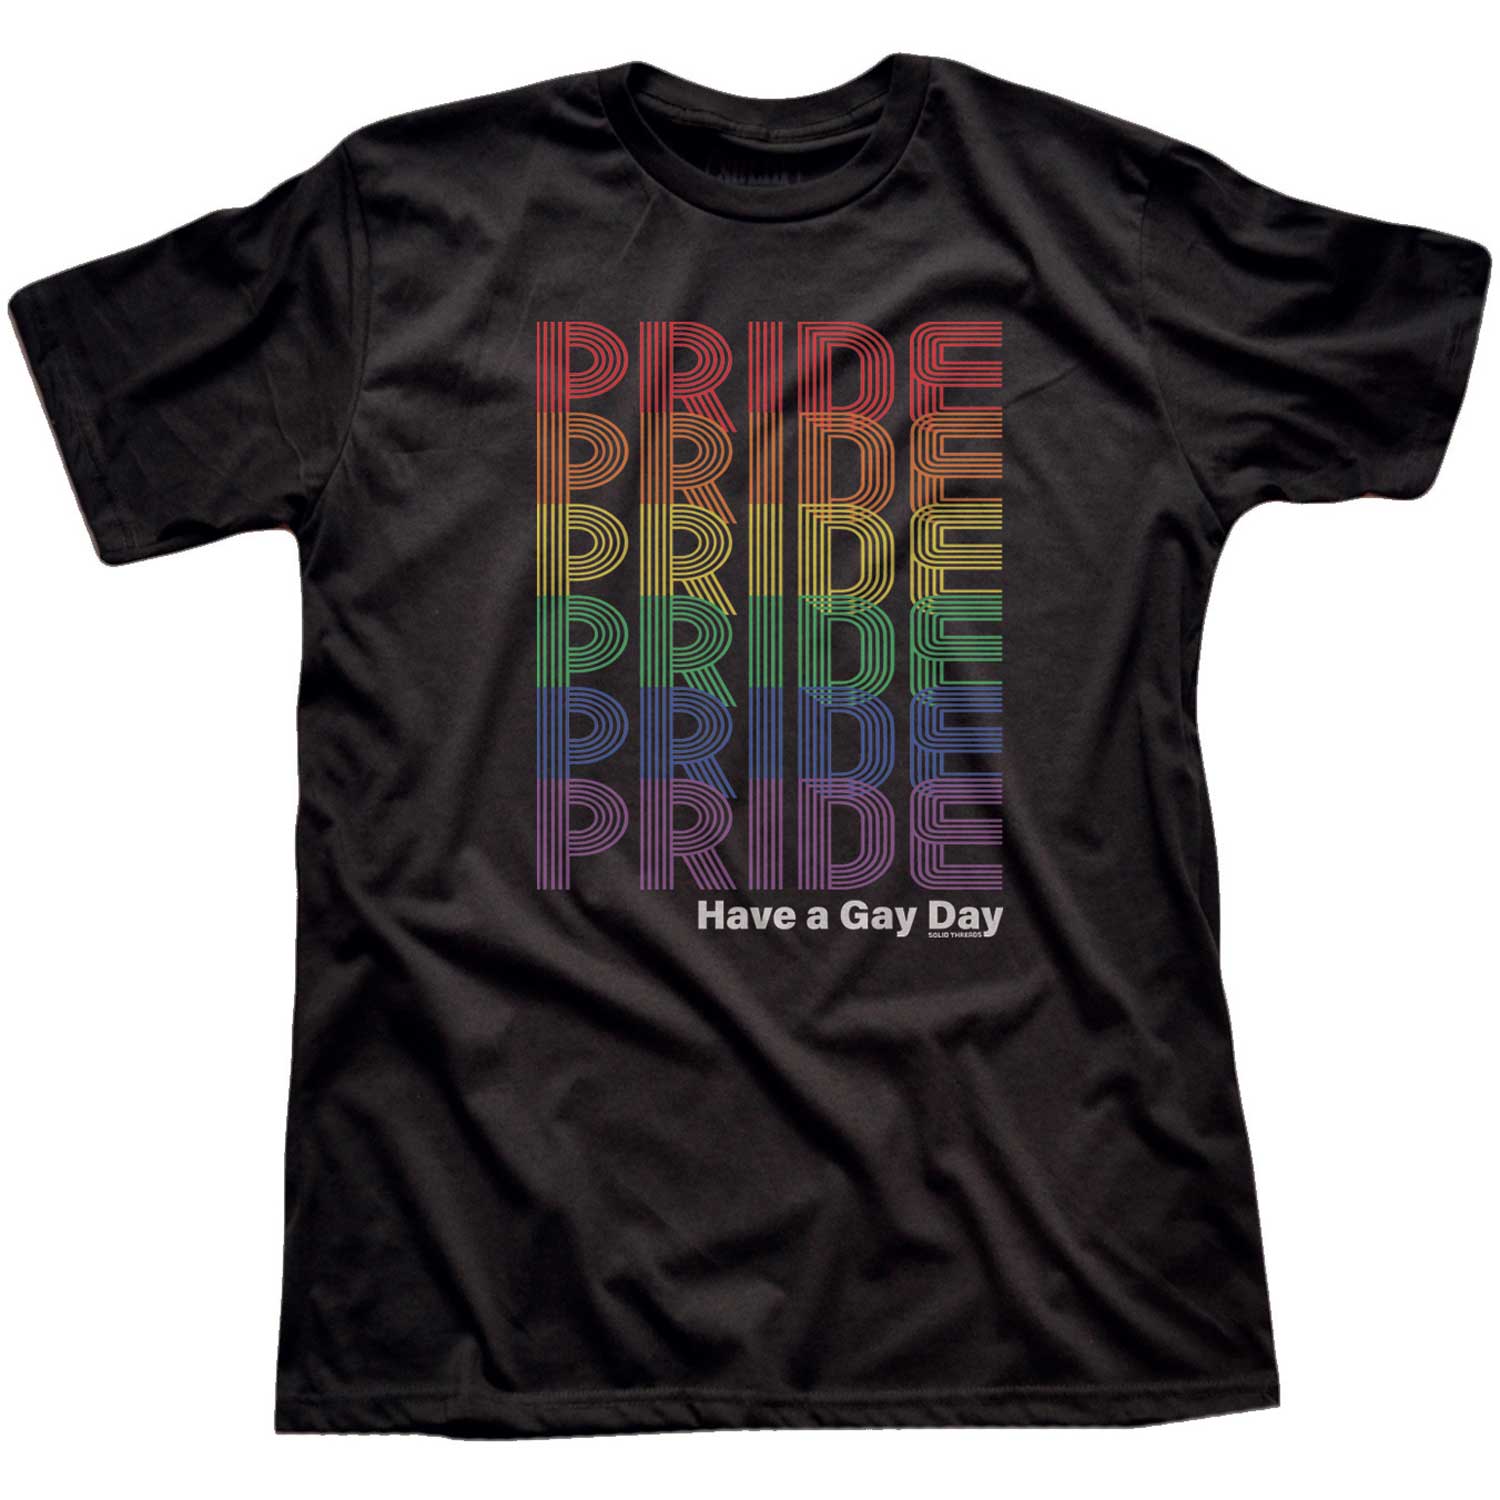 Men's Vintage Pride Rainbow Fade Graphic Tee | Retro Gay Rights T-shirt